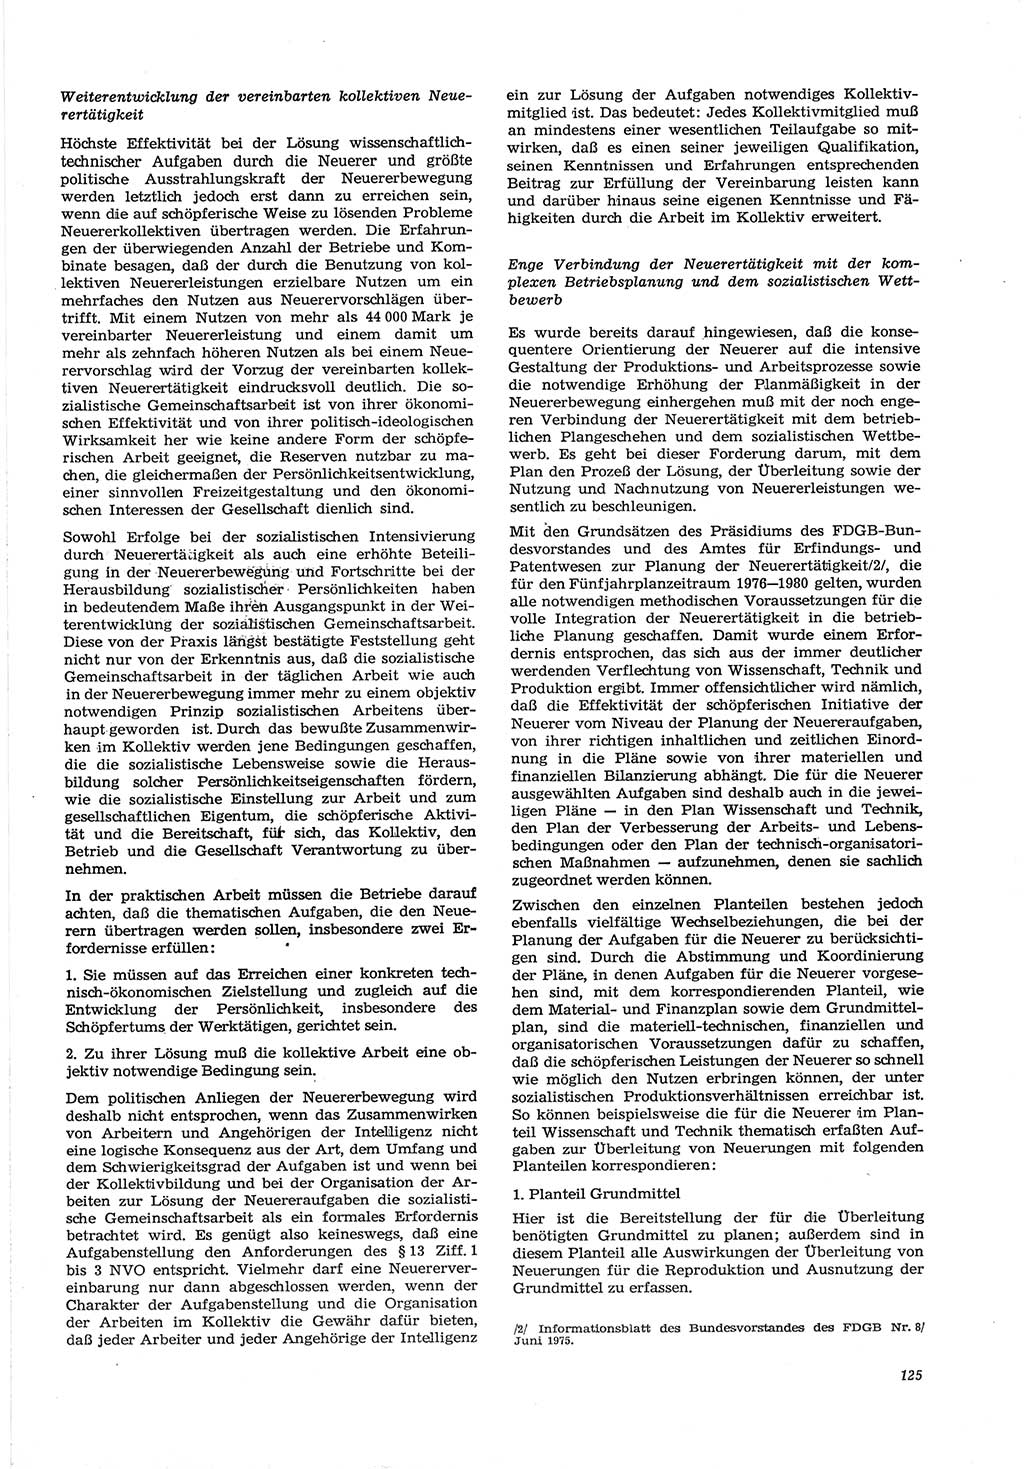 Neue Justiz (NJ), Zeitschrift für Recht und Rechtswissenschaft [Deutsche Demokratische Republik (DDR)], 30. Jahrgang 1976, Seite 125 (NJ DDR 1976, S. 125)